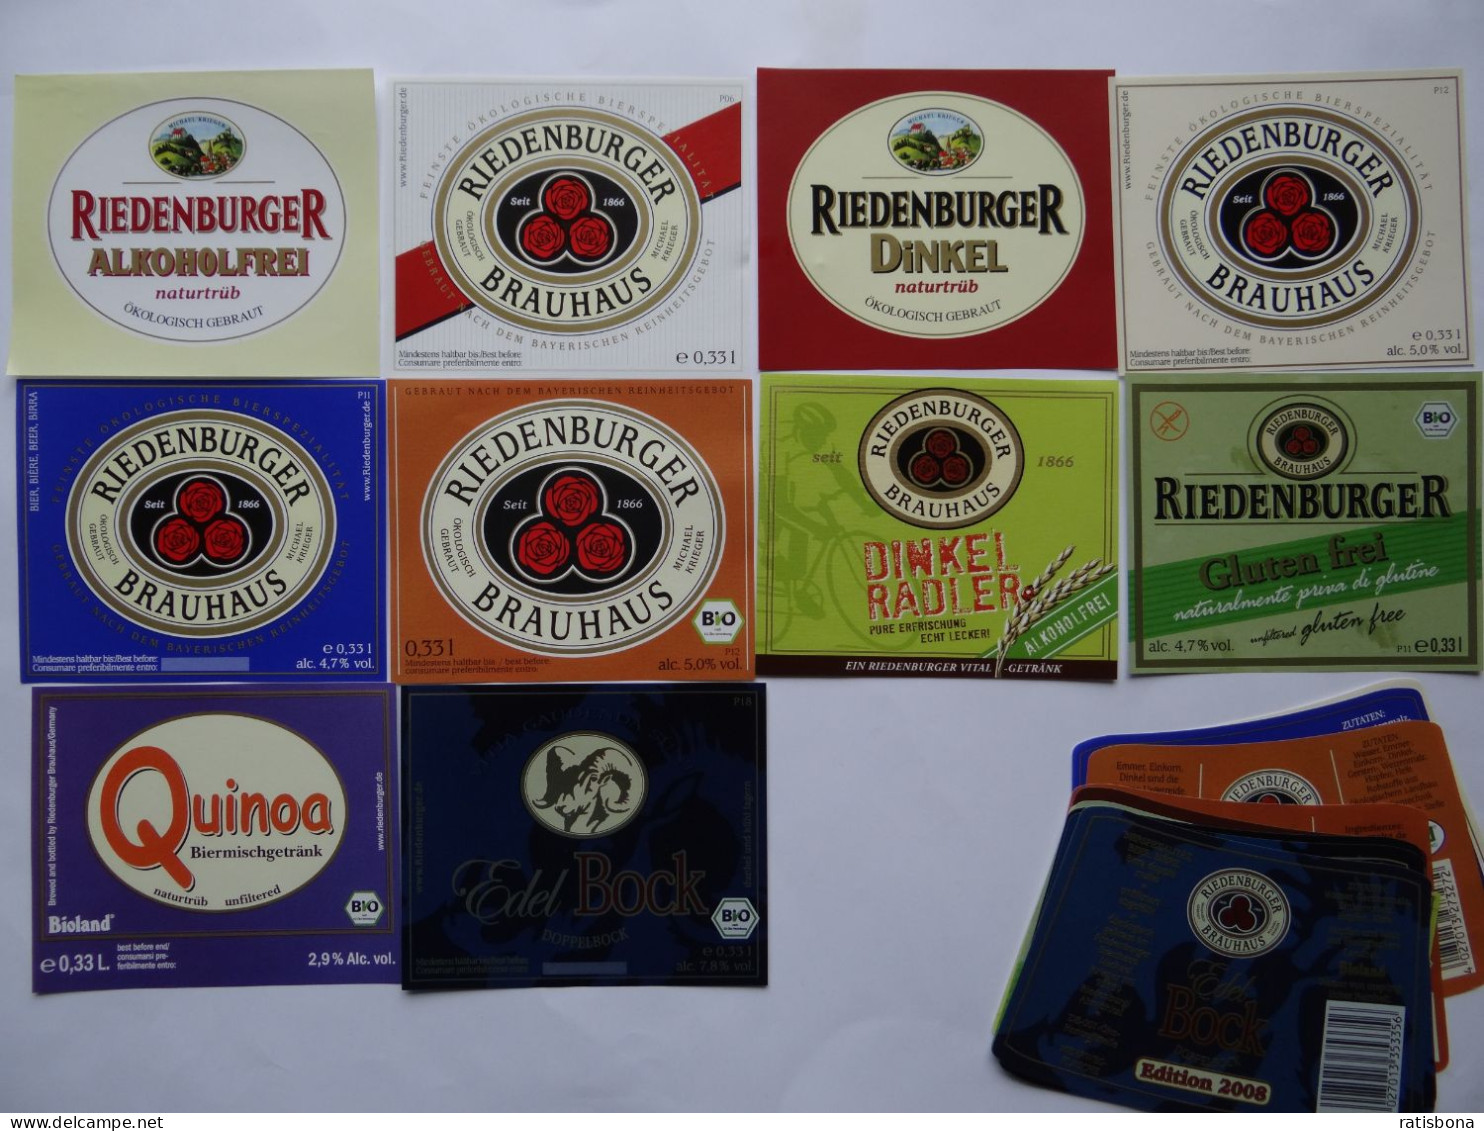 10 ältere Bier-Etiketten - Bio-Bier, Riedenburger Brauhaus, Bayern - Beer